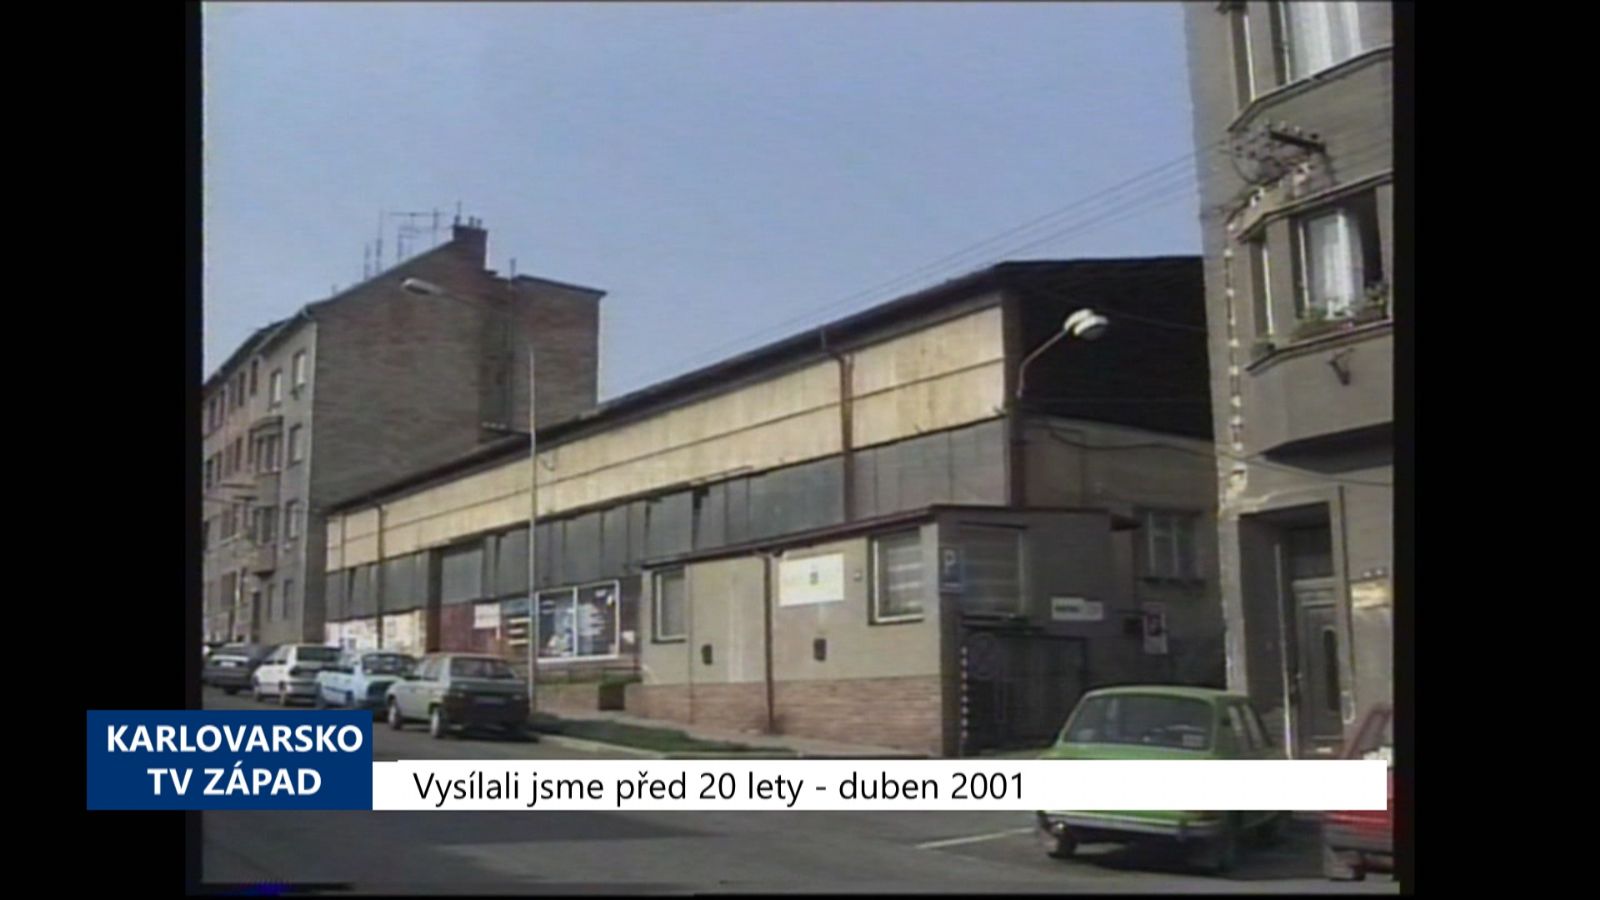 2001 – Cheb: Město chystá výstavbu obytného domu (TV Západ)